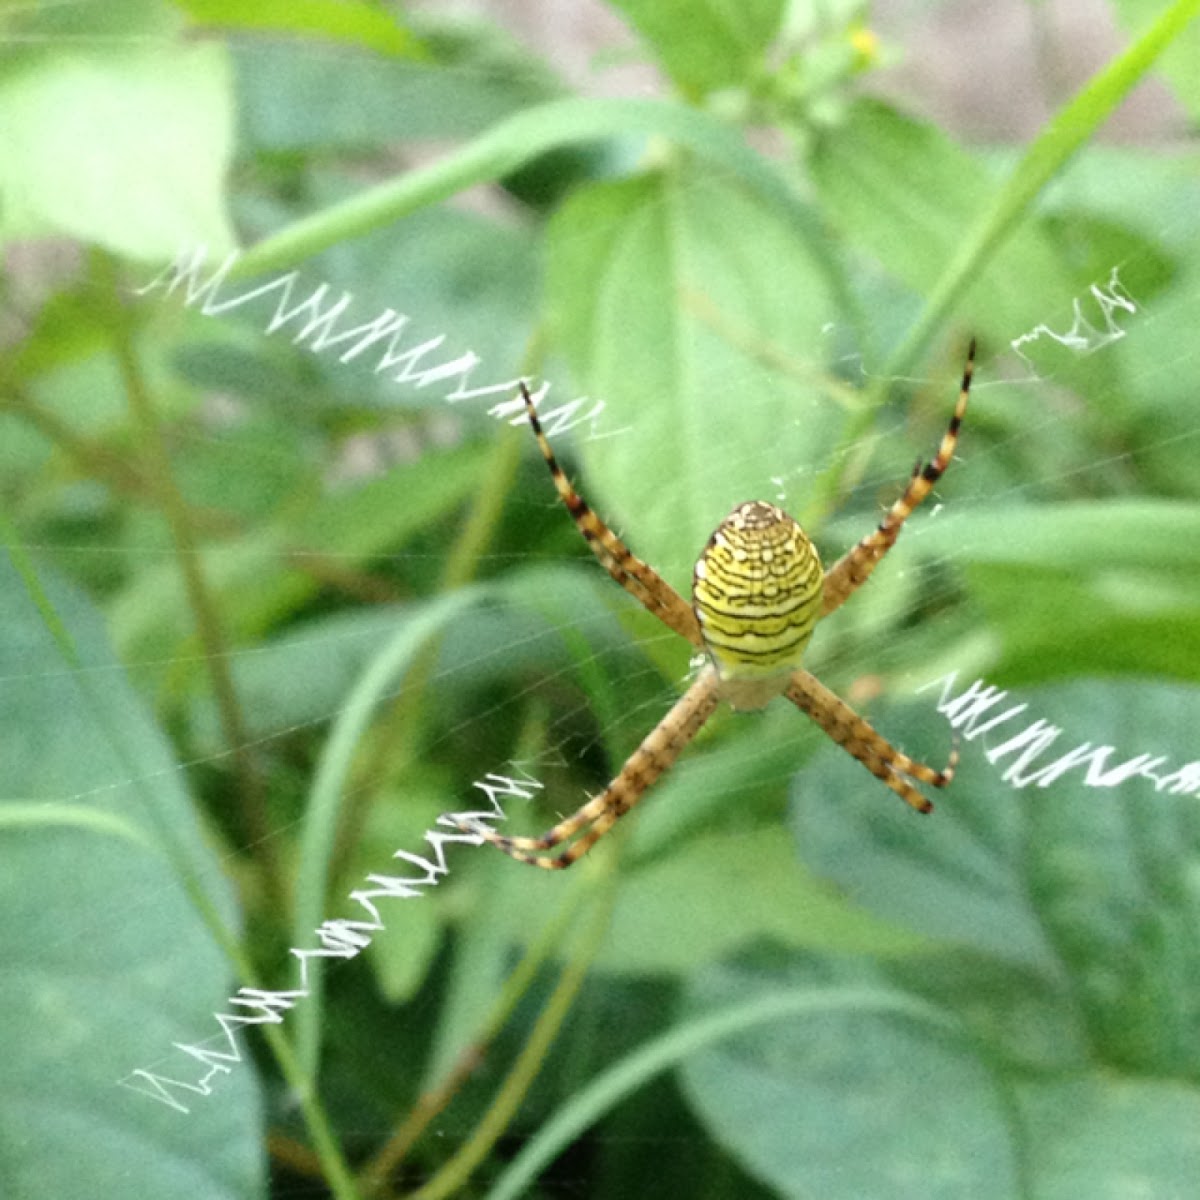 Samurai spider,Garden spider